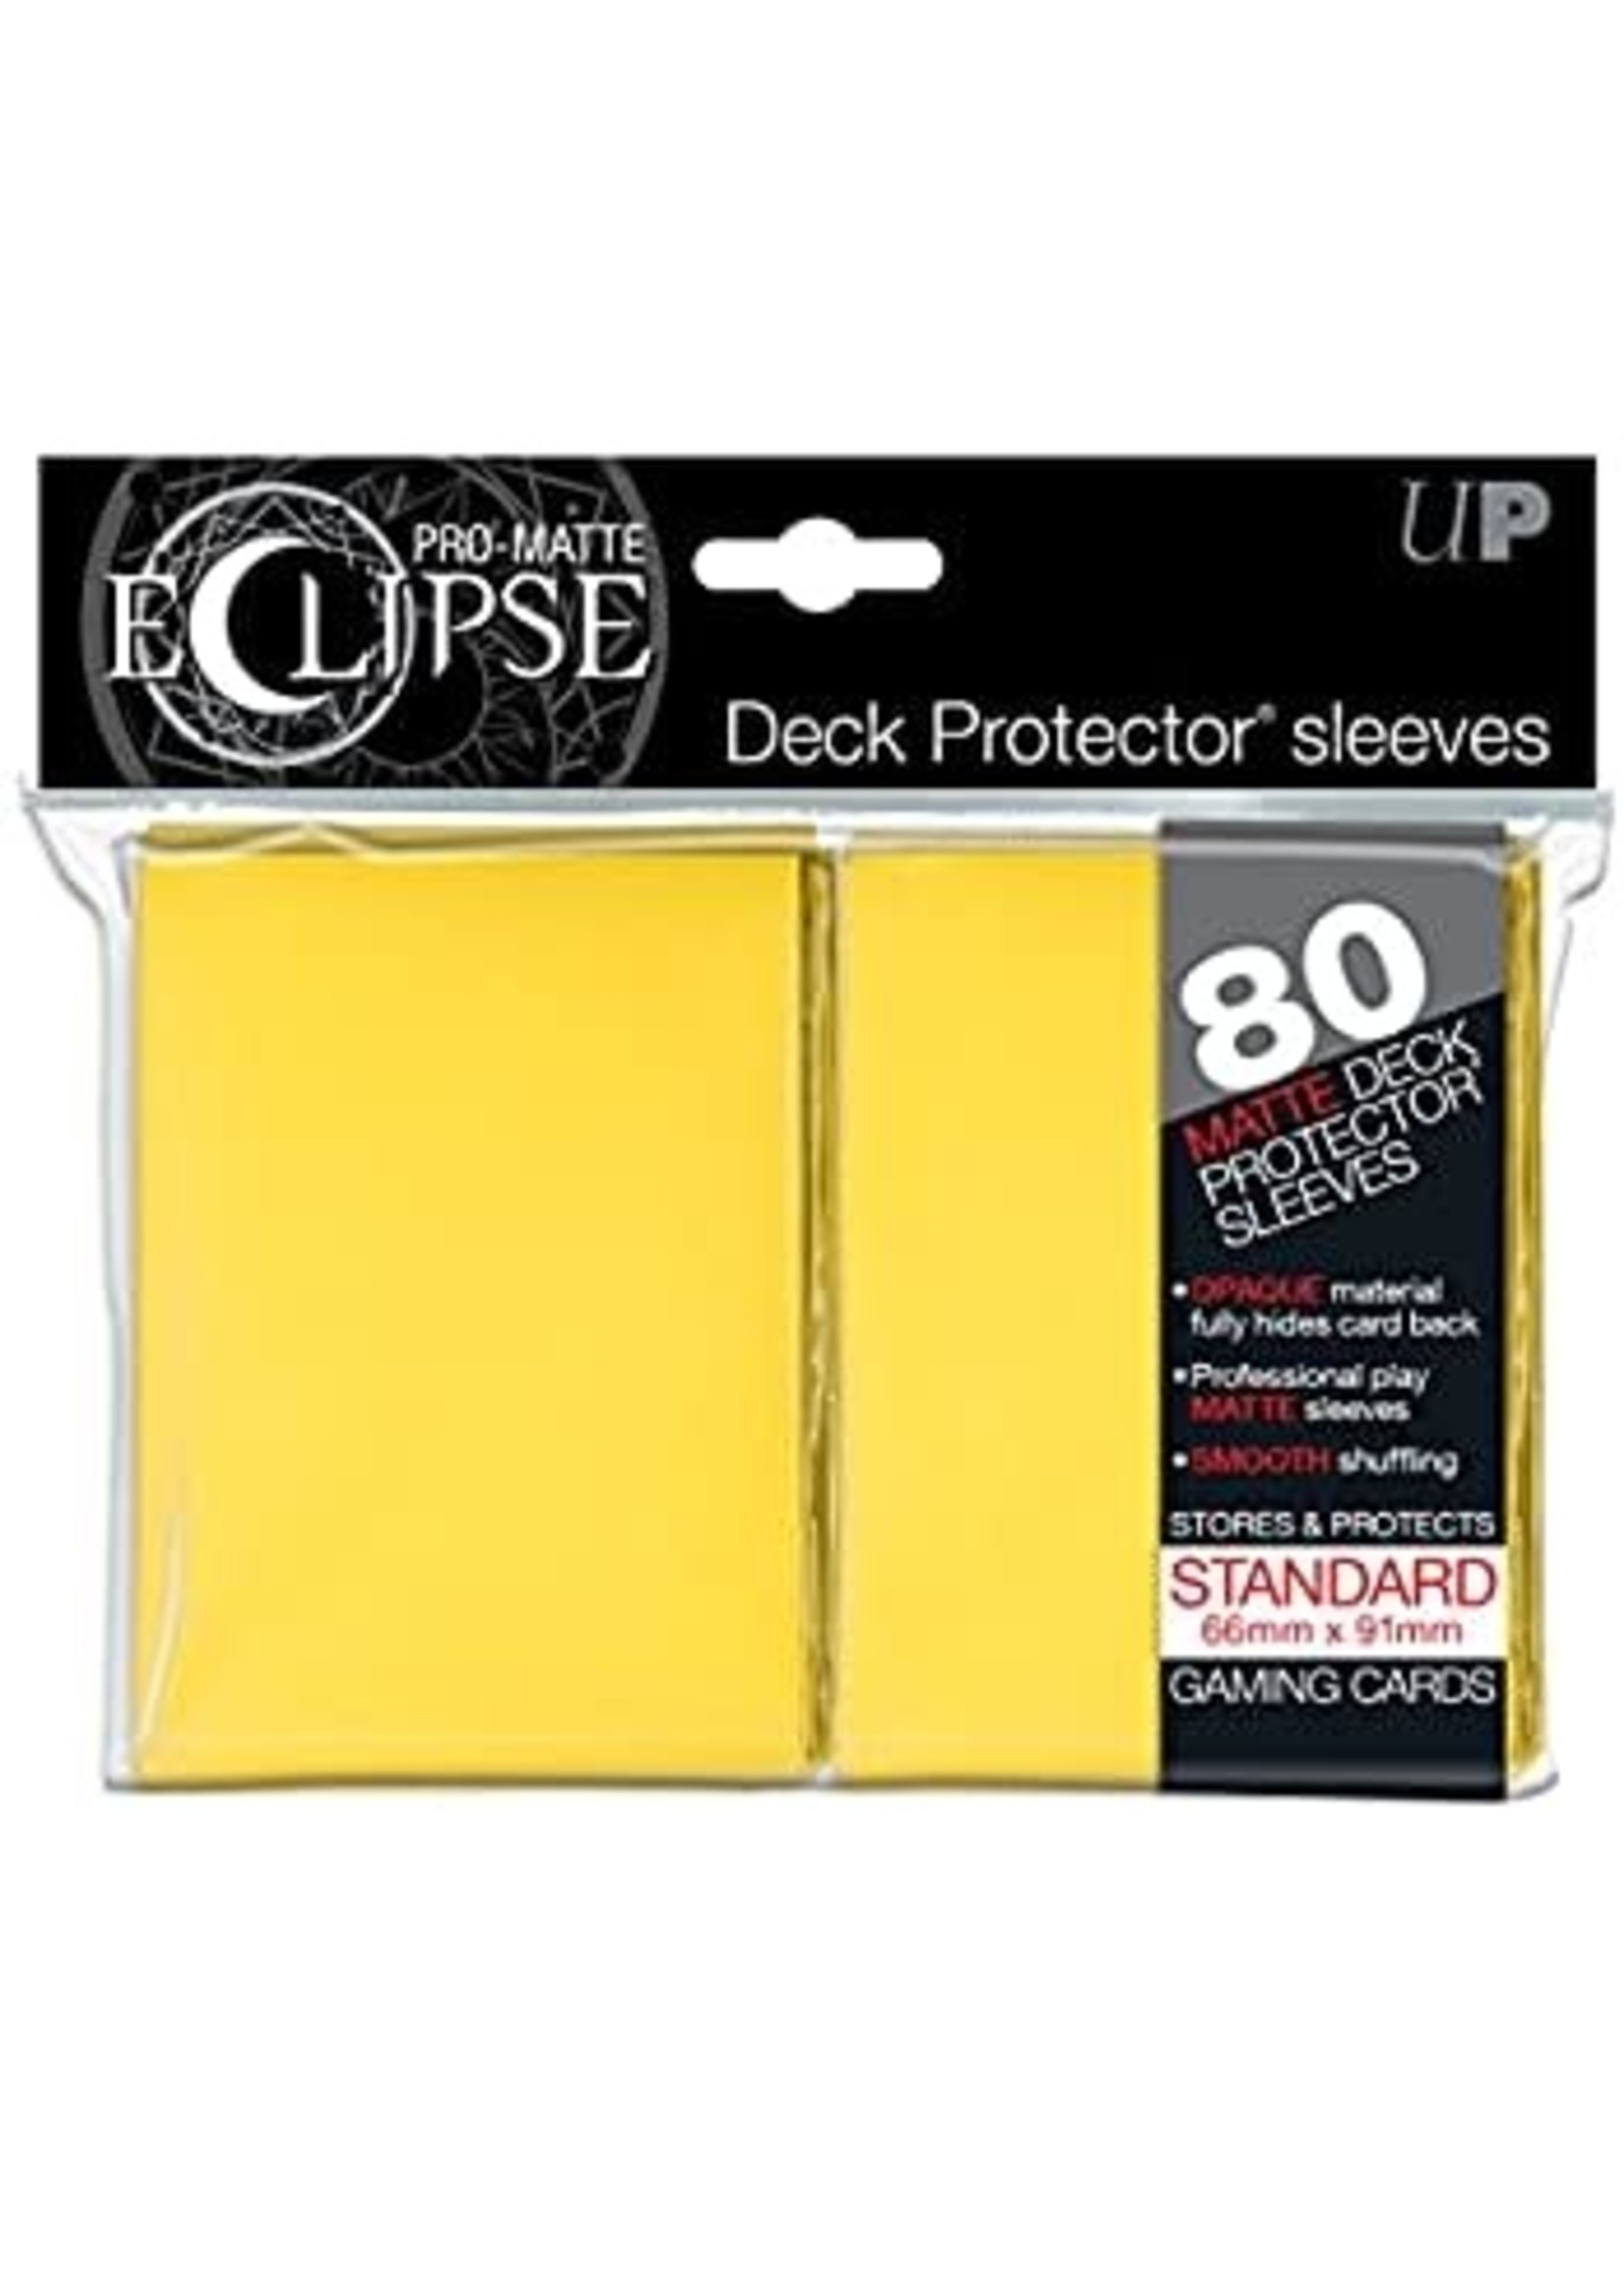 Ultra Pro UltraPro Pro-Matte Eclipse Sleeves Yellow 80 pack